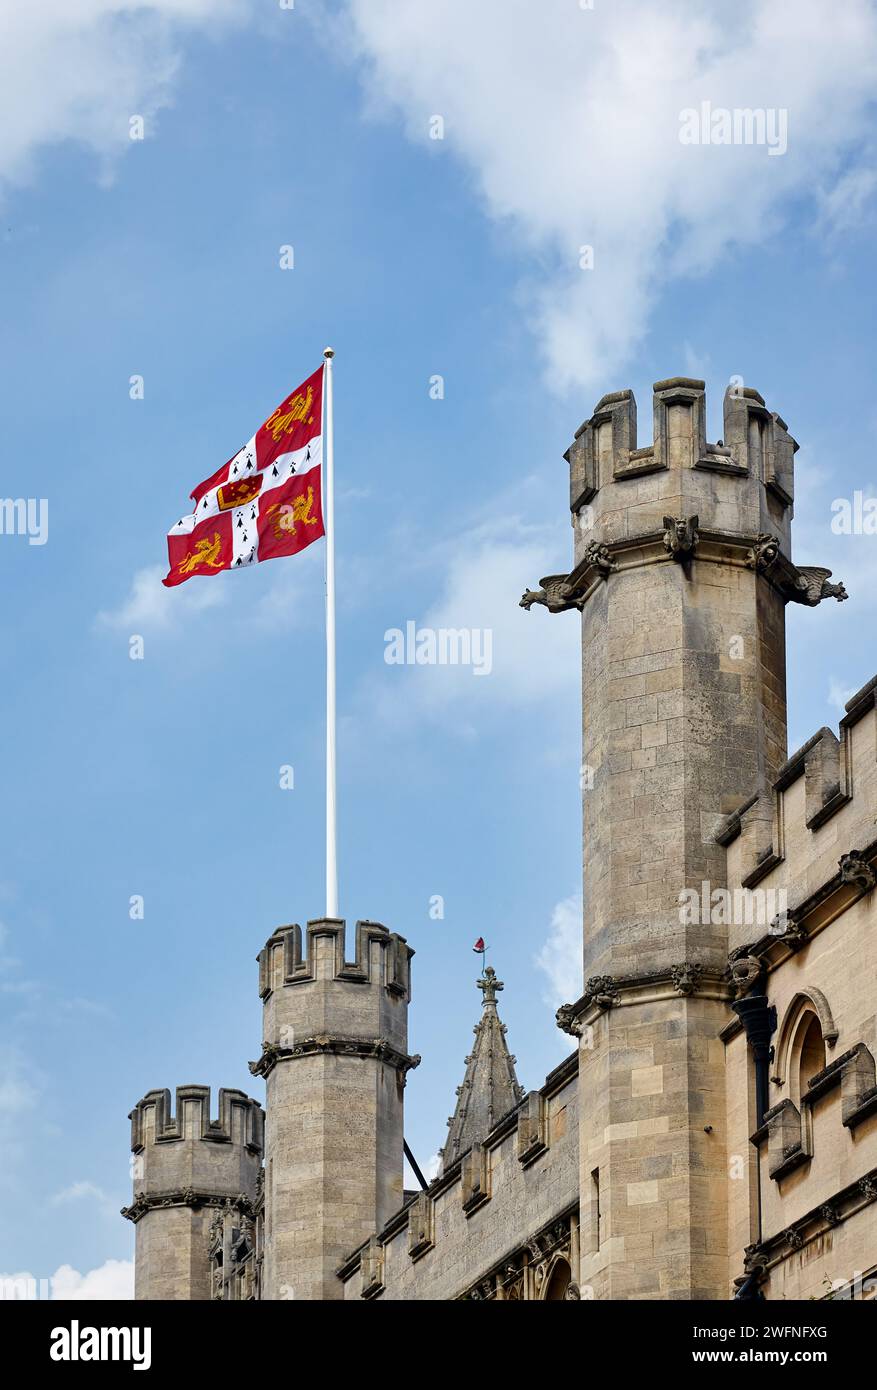 Drapeau de l'Université de Cambridge agitant sur les murs et les tours battues du bâtiment Old Schools. Université de Cambridge. Royaume-Uni. Banque D'Images